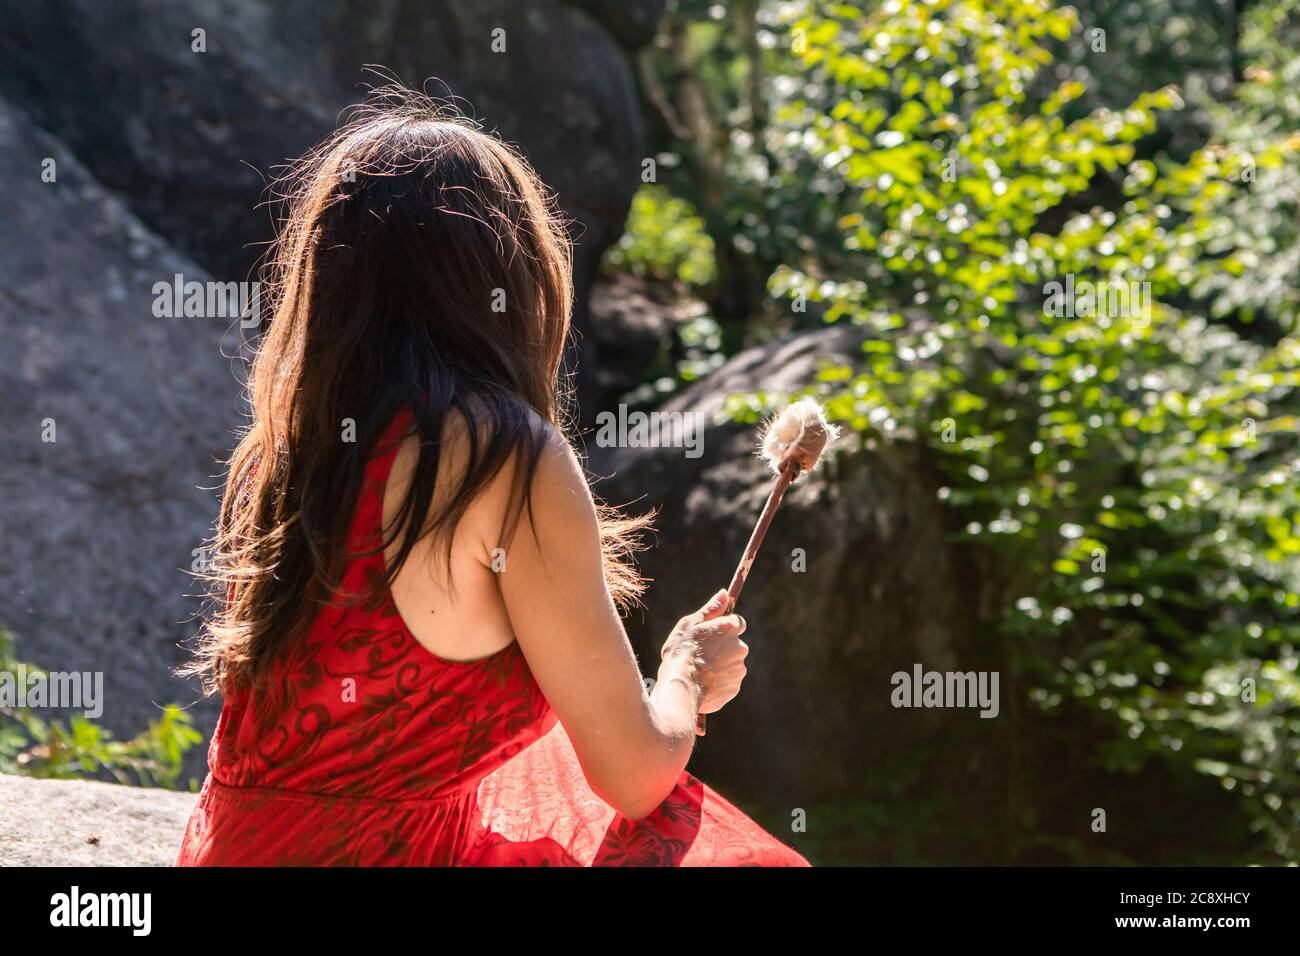 Blick von hinten auf eine junge Frau in einem ärmellosen roten Kleid, die auf einem Felsen in einer Lichtung im Wald sitzt und einen Trommelklatschen in der Hand hält. Stockfoto